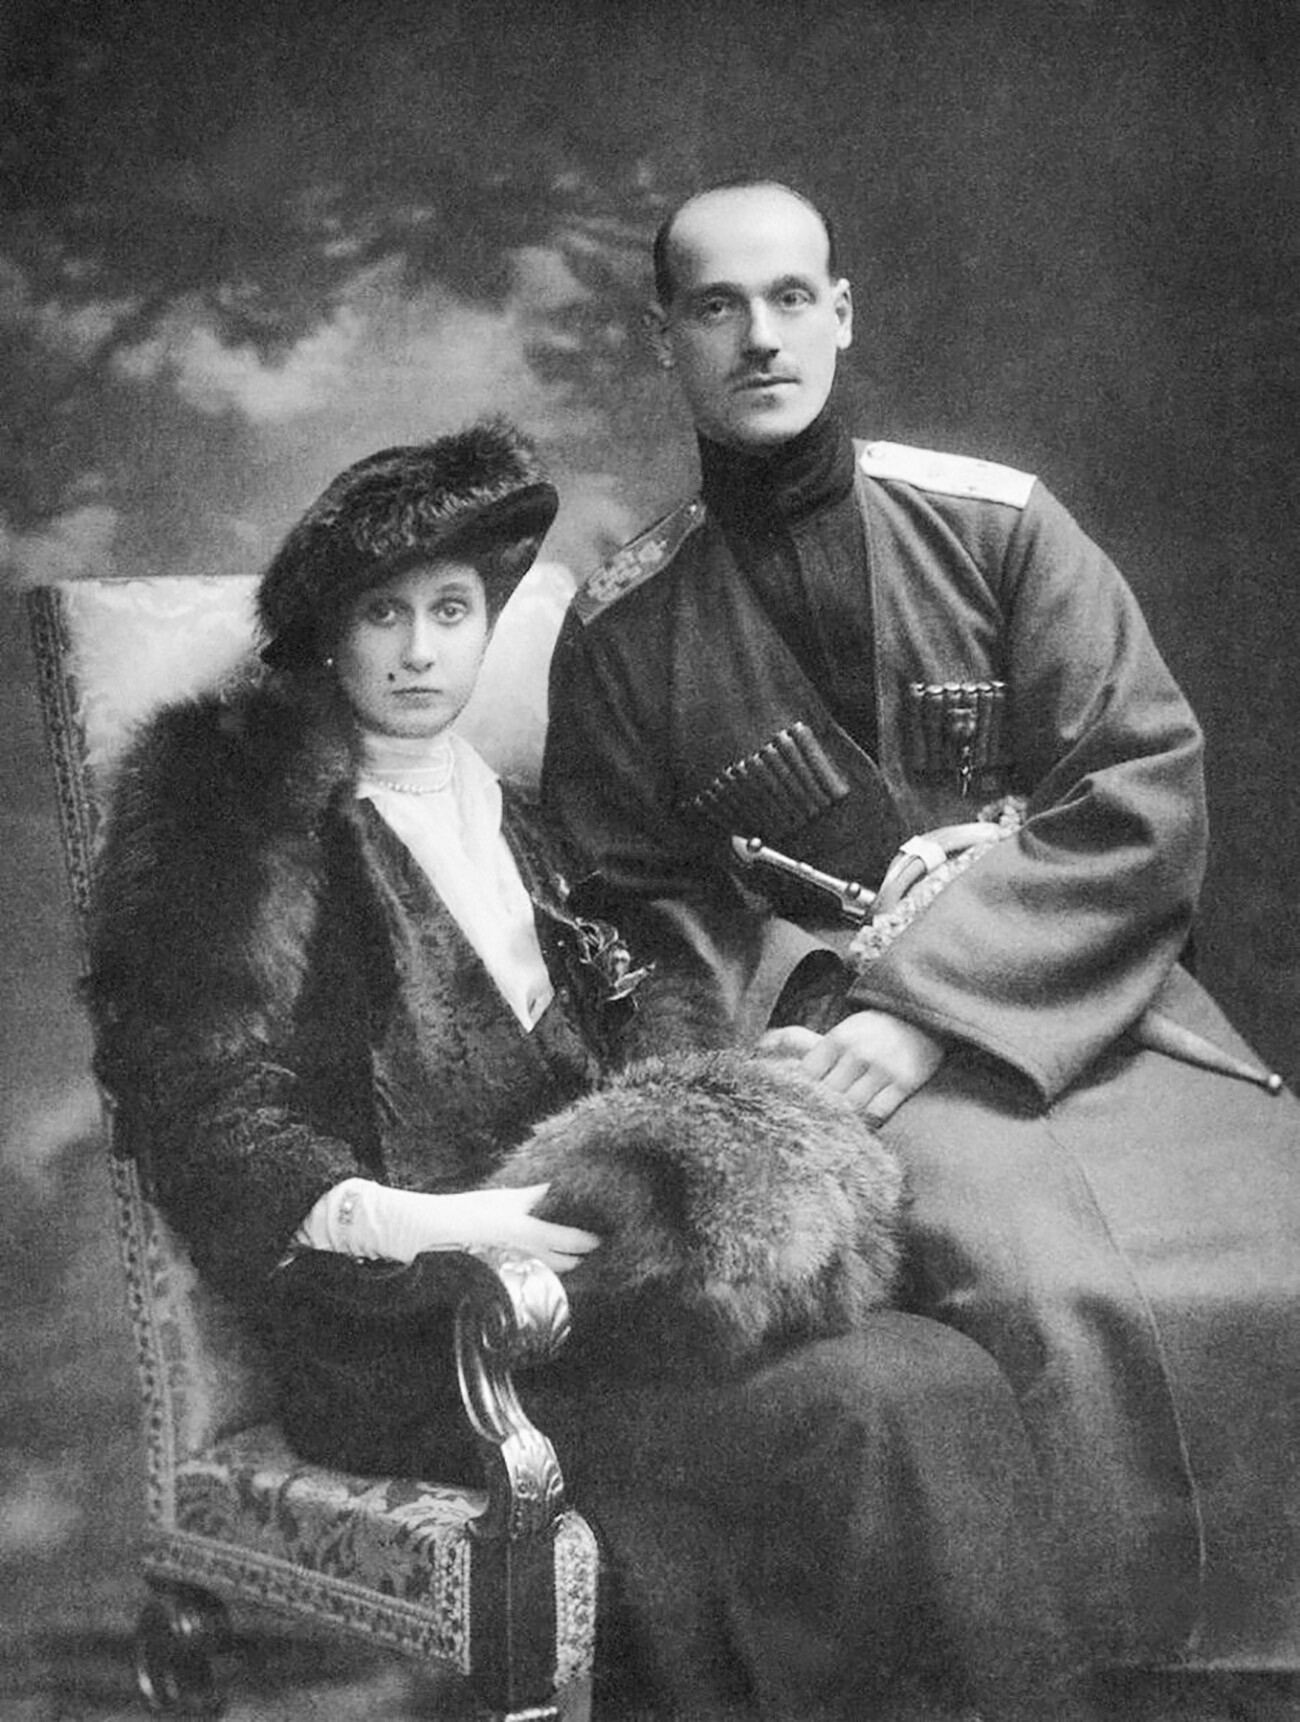 「野生師団」の司令官としてのミハイル・ロマノフと妻のナタリヤ